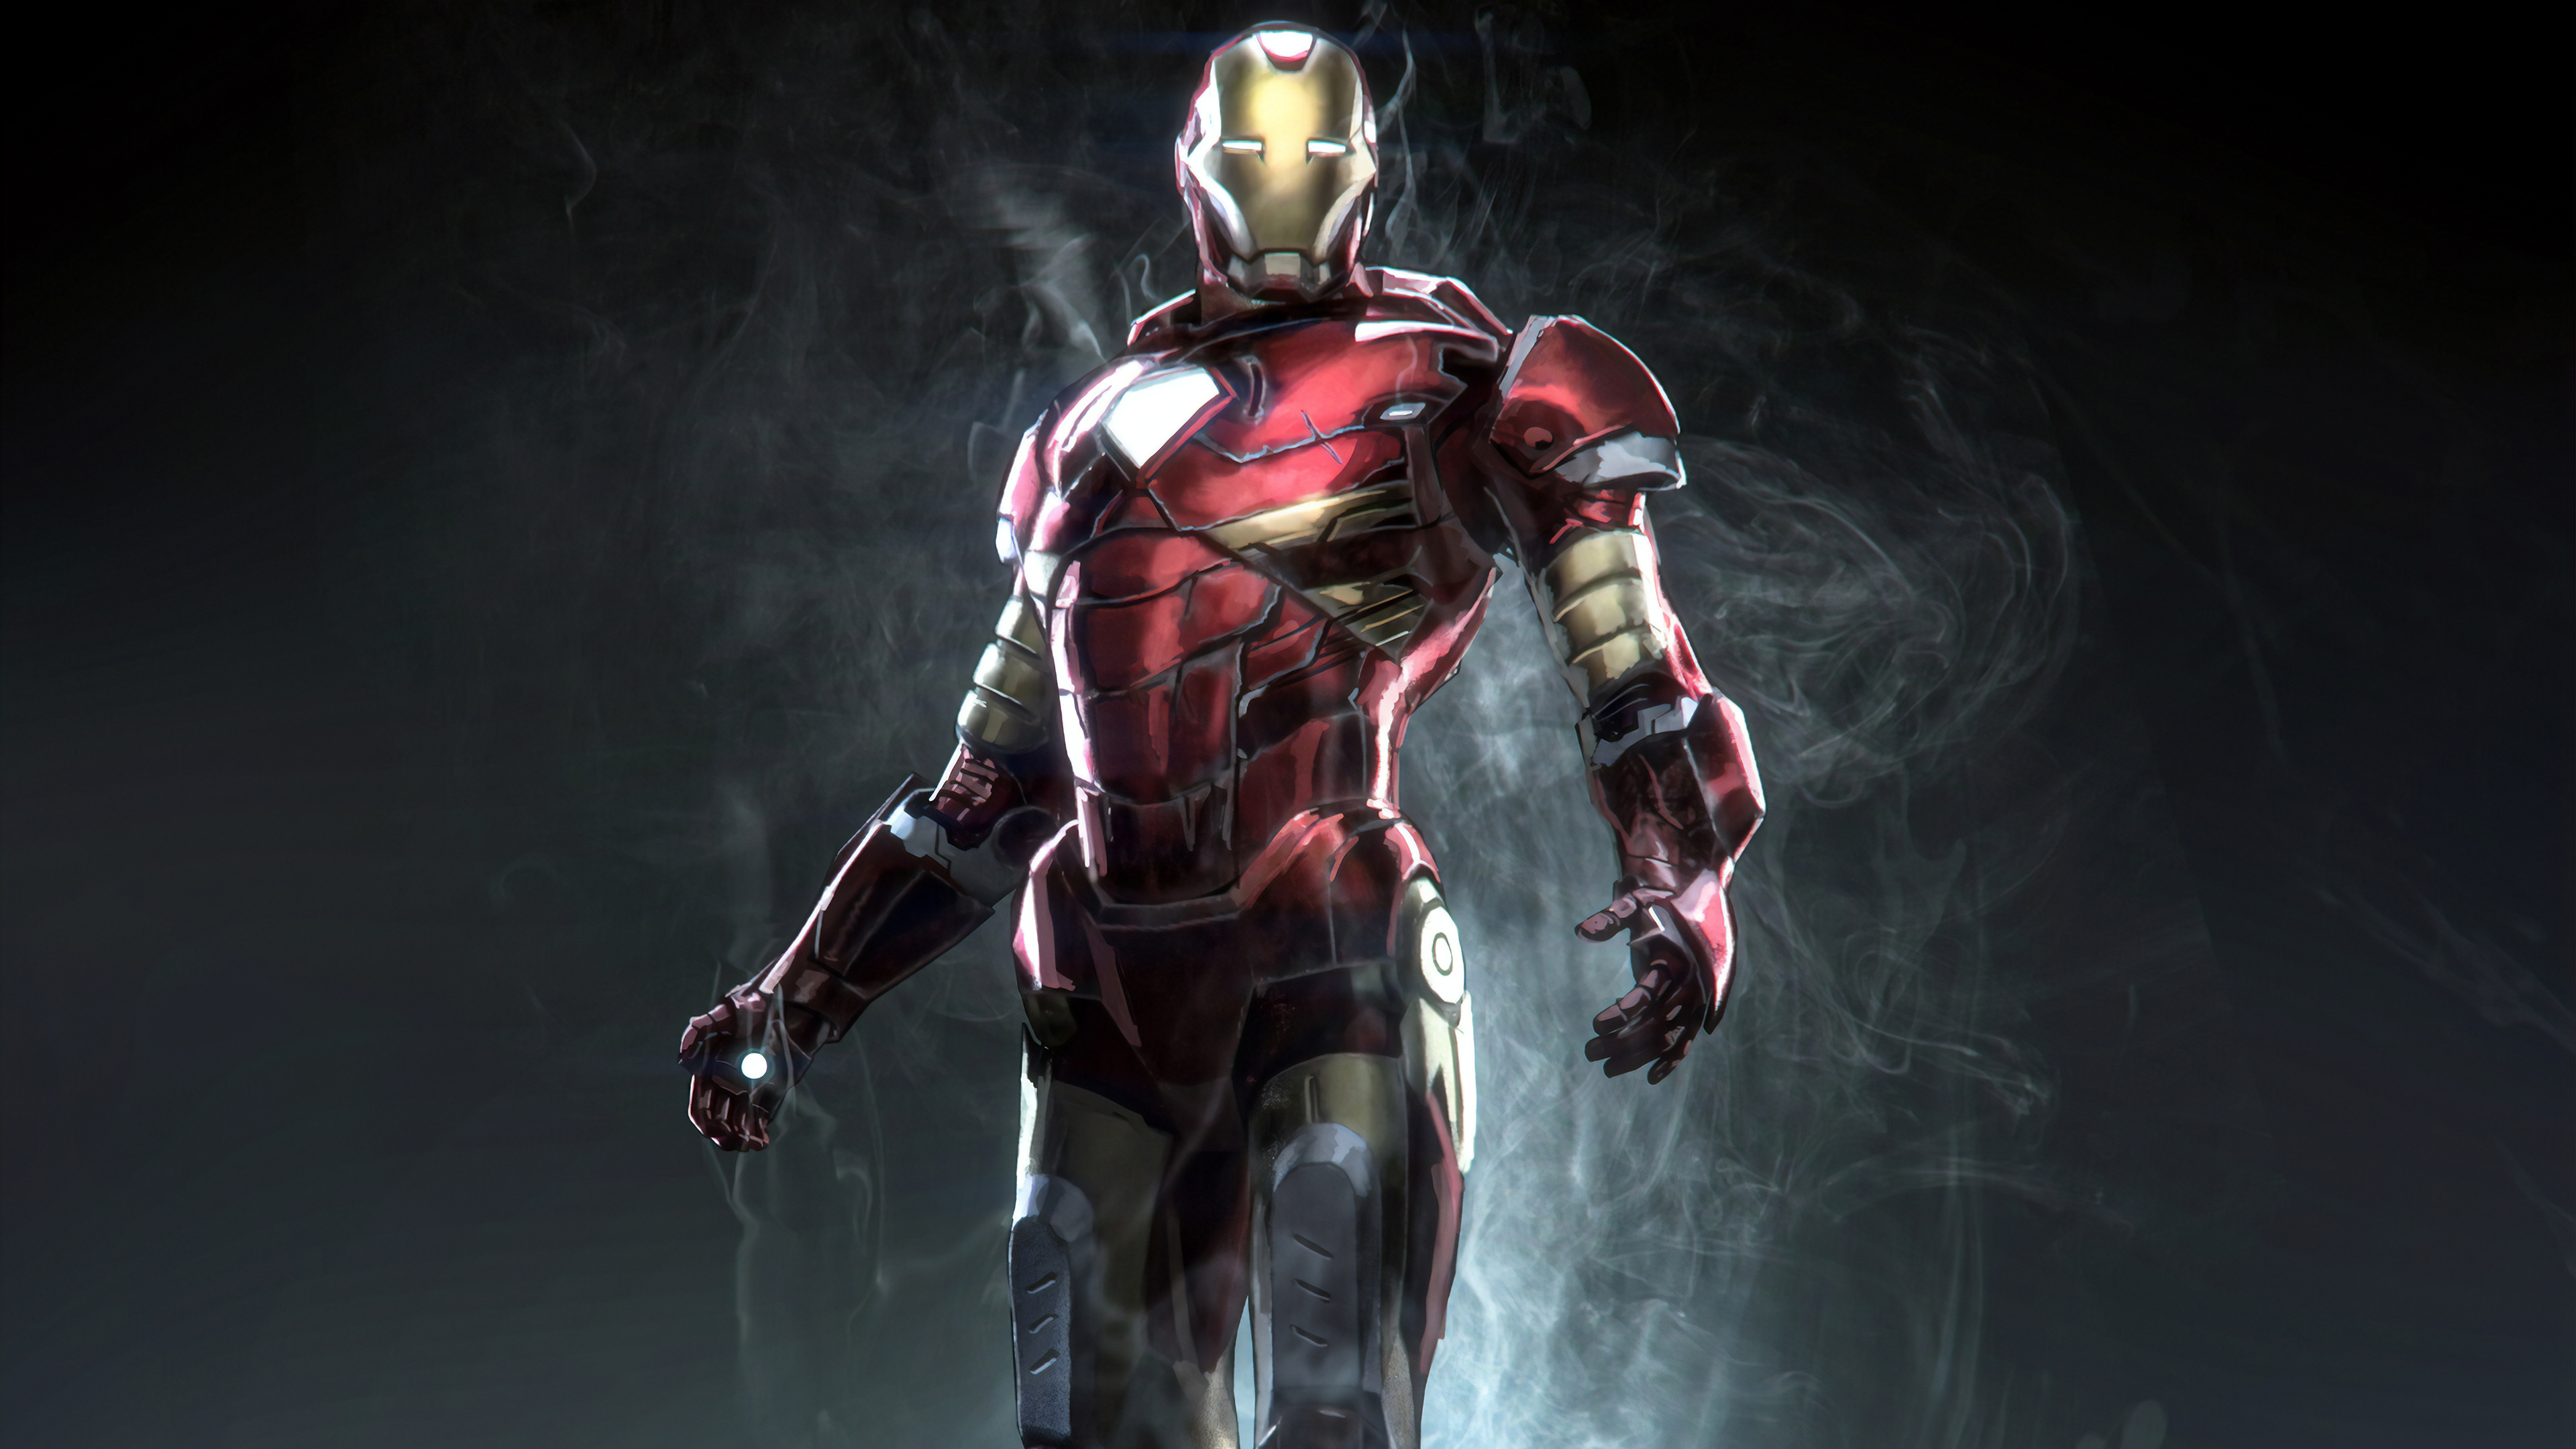 superhero wallpaper hd,hombre de acero,superhéroe,personaje de ficción,armadura,héroe